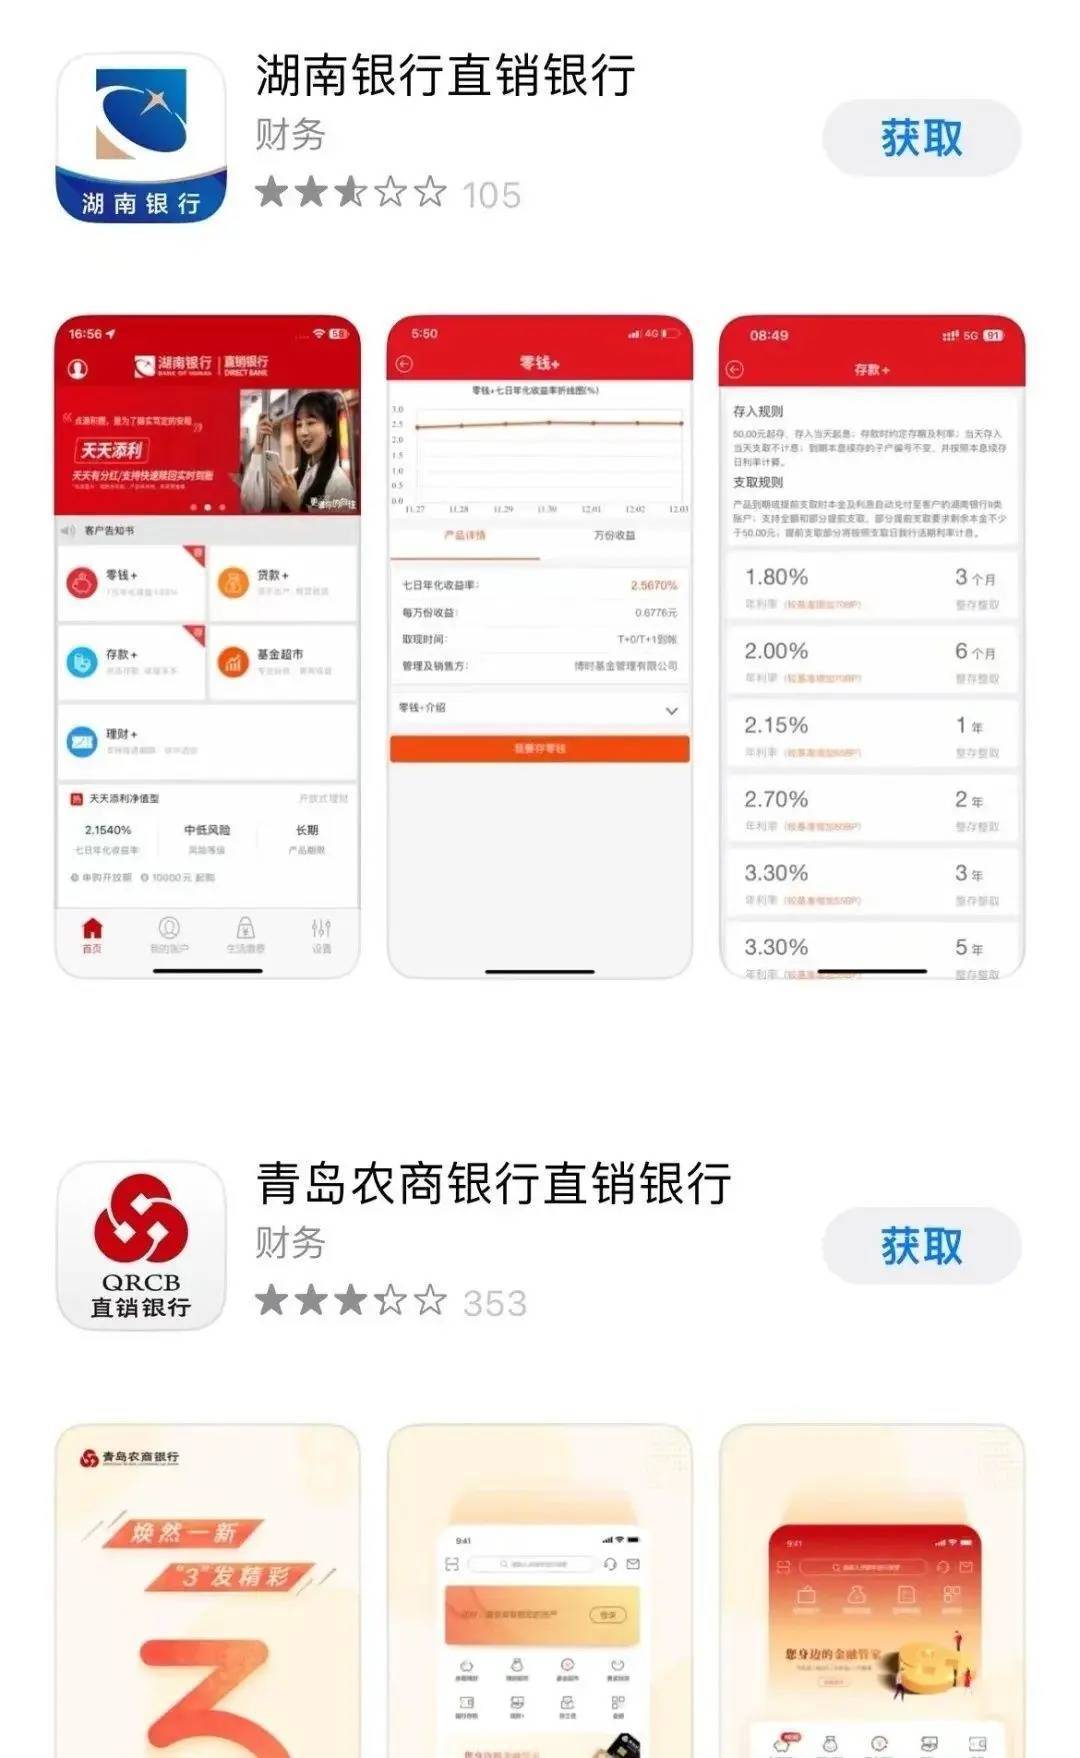 目前市场上可下载的直销银行app还有十多款,包含湖南银行,青岛农商行